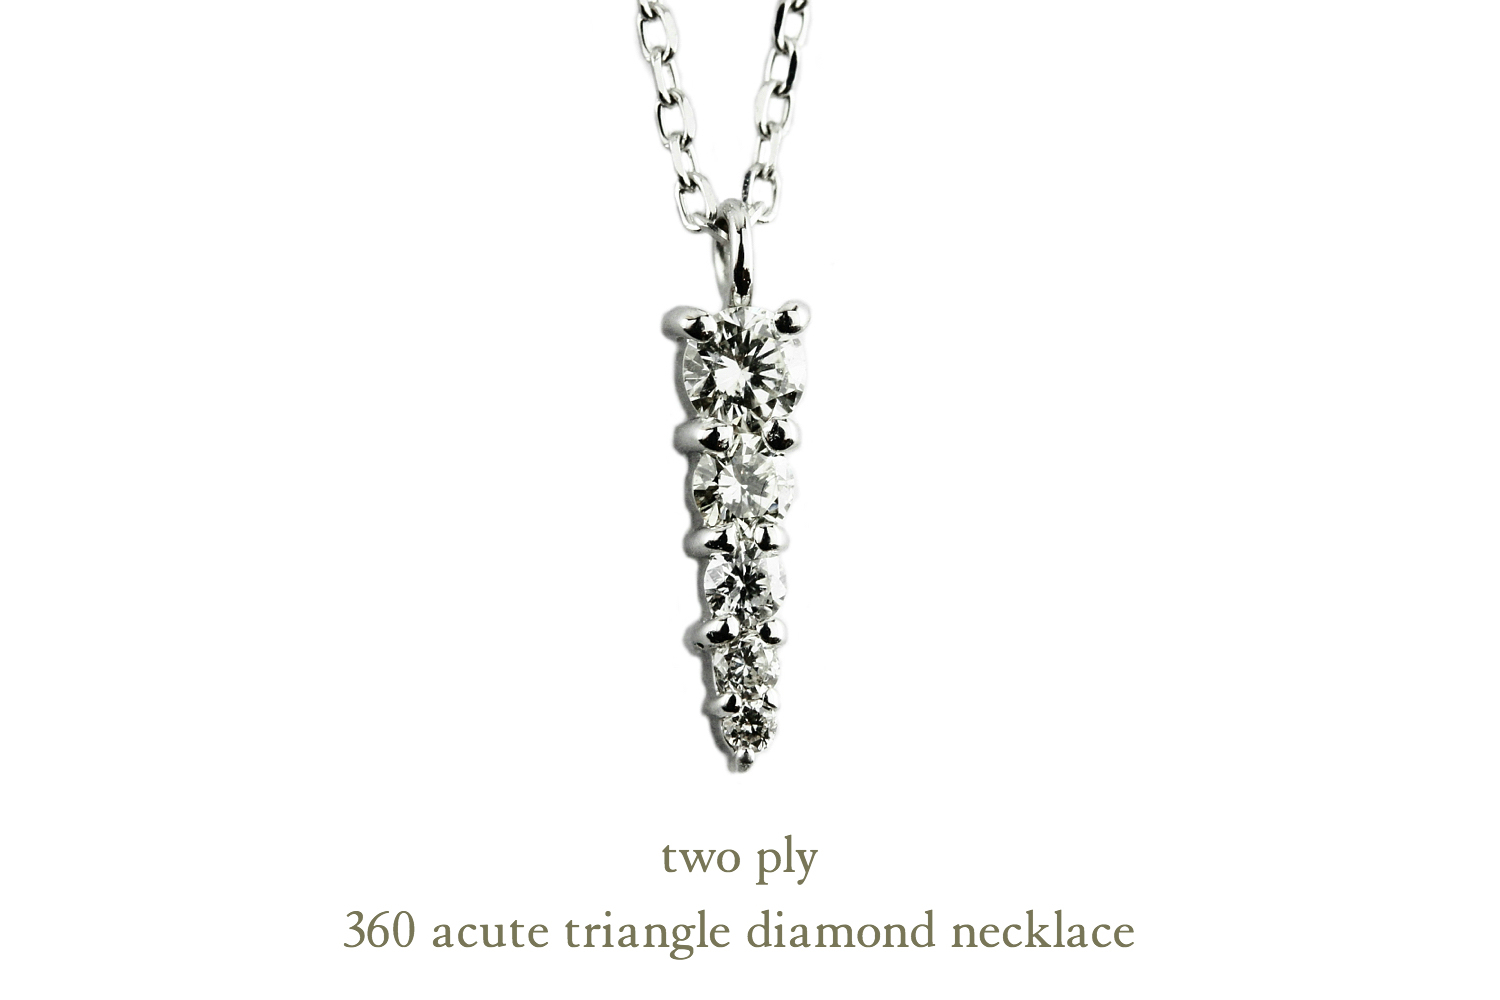 トゥー プライ 360 アキュート トライアングル ダイヤモンド ネックレス 18金,two ply Acute Triangle Diamond Necklace K18